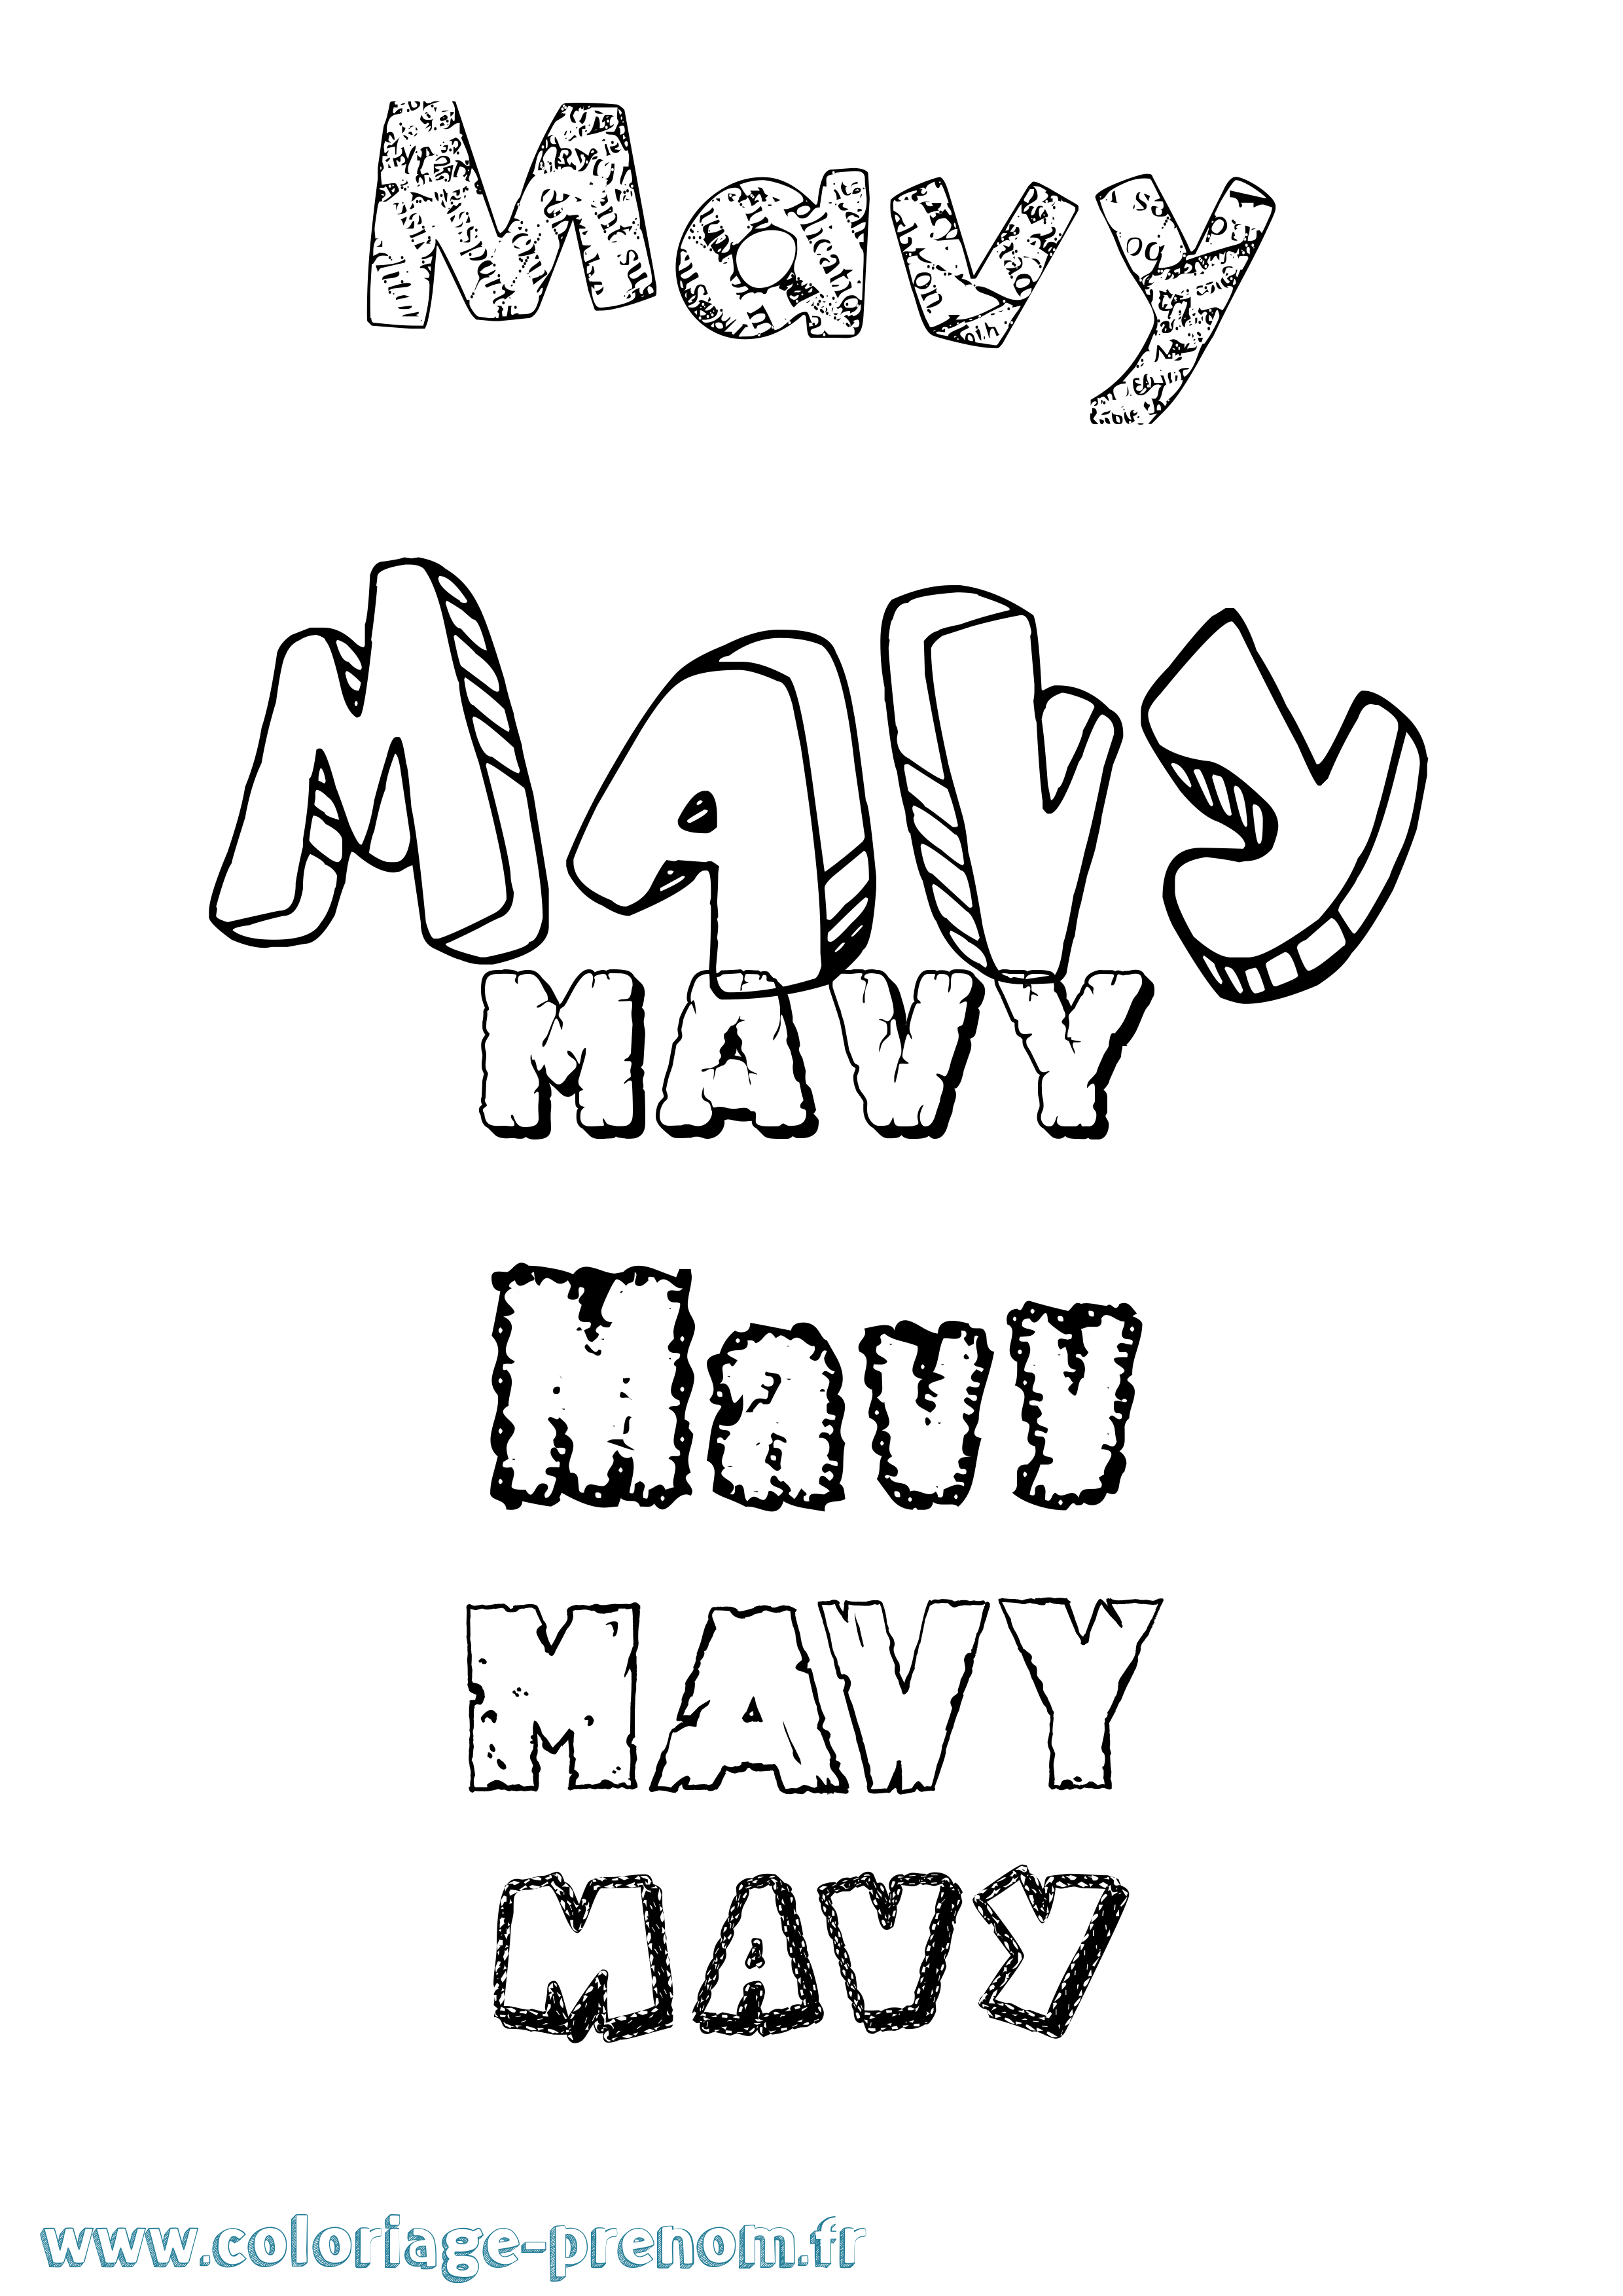 Coloriage prénom Mavy Destructuré